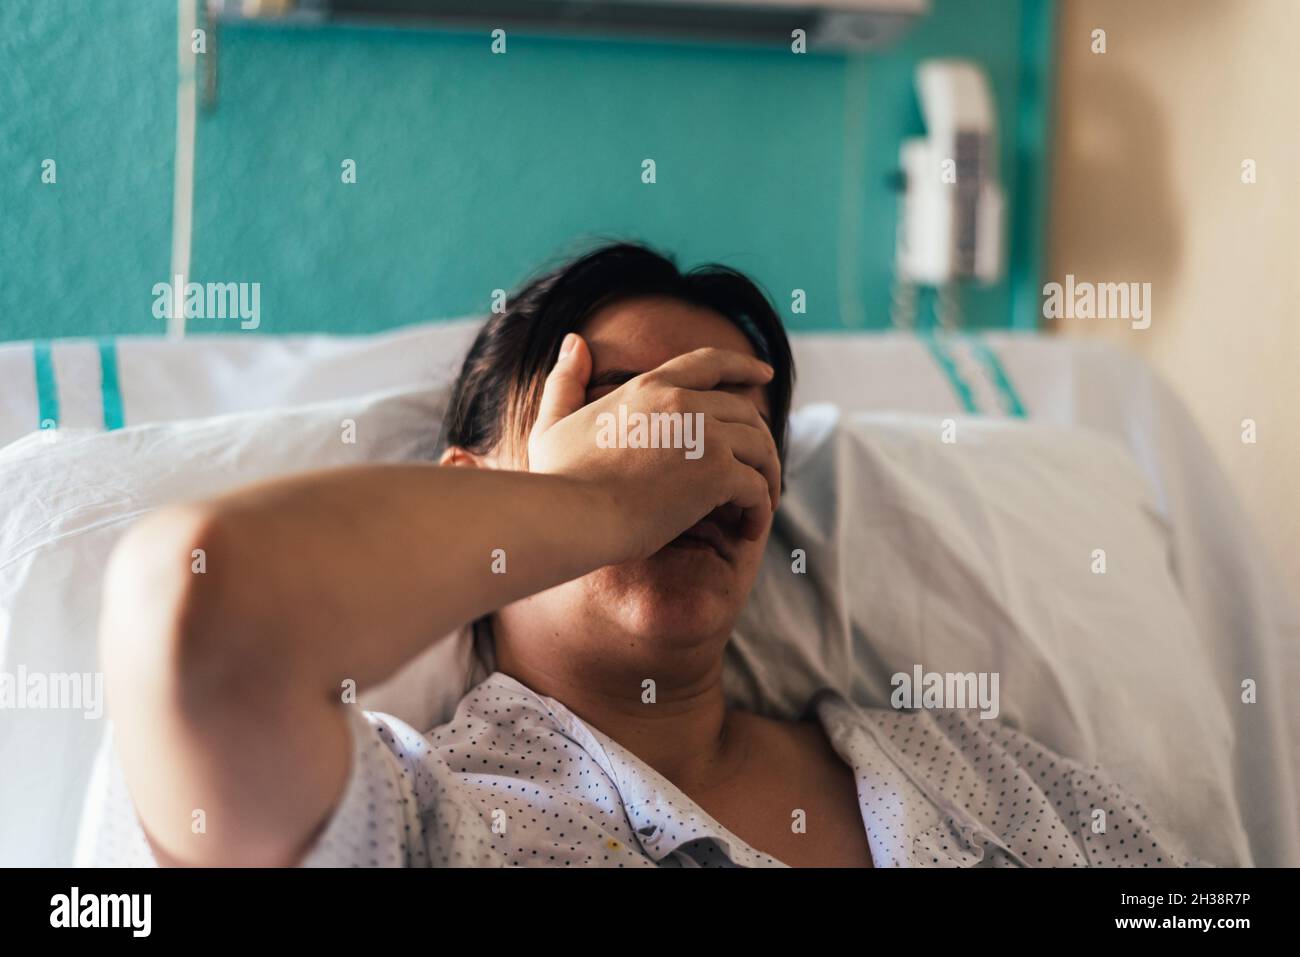 Una joven hospitalizada en una cama. Gestos de dolor y preocupación. Foto de stock